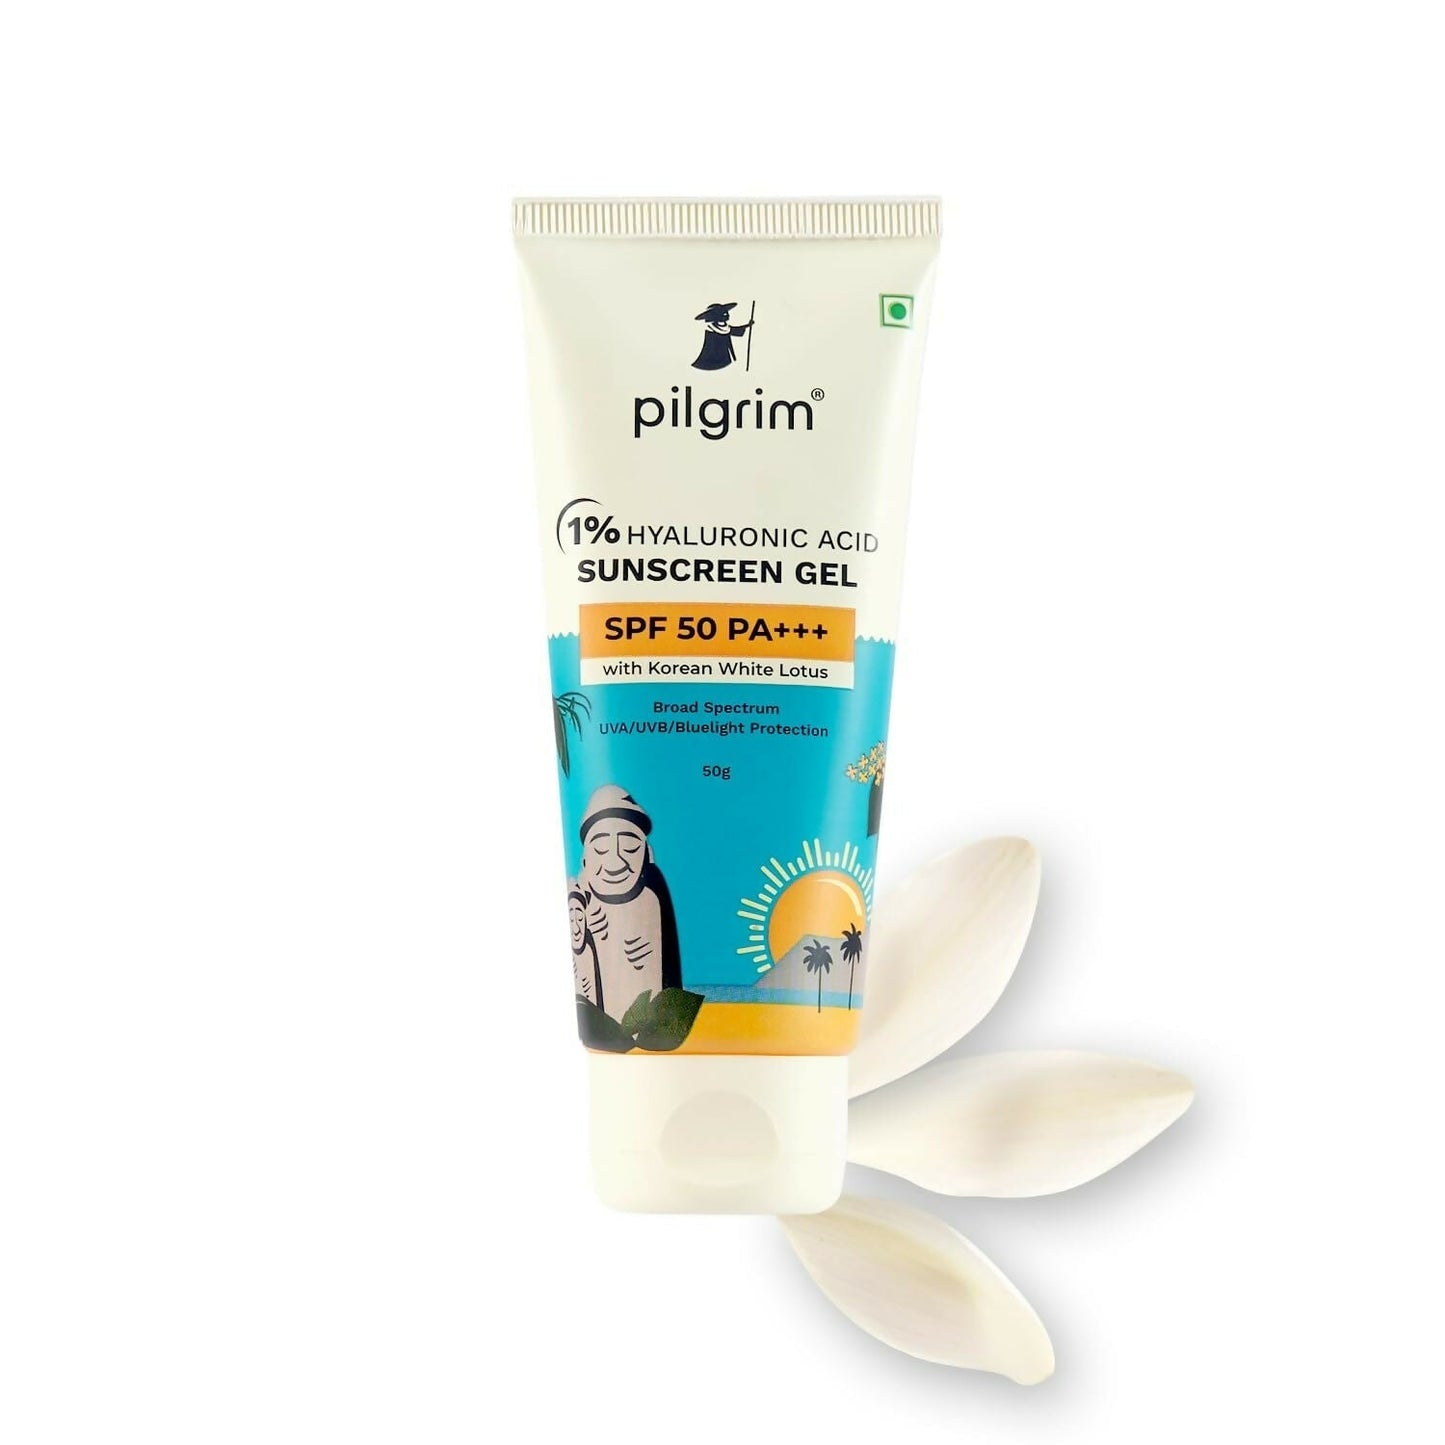 Pilgrim 1% Hyaluronic Acid Sunscreen Gel SPF 50 PA+++